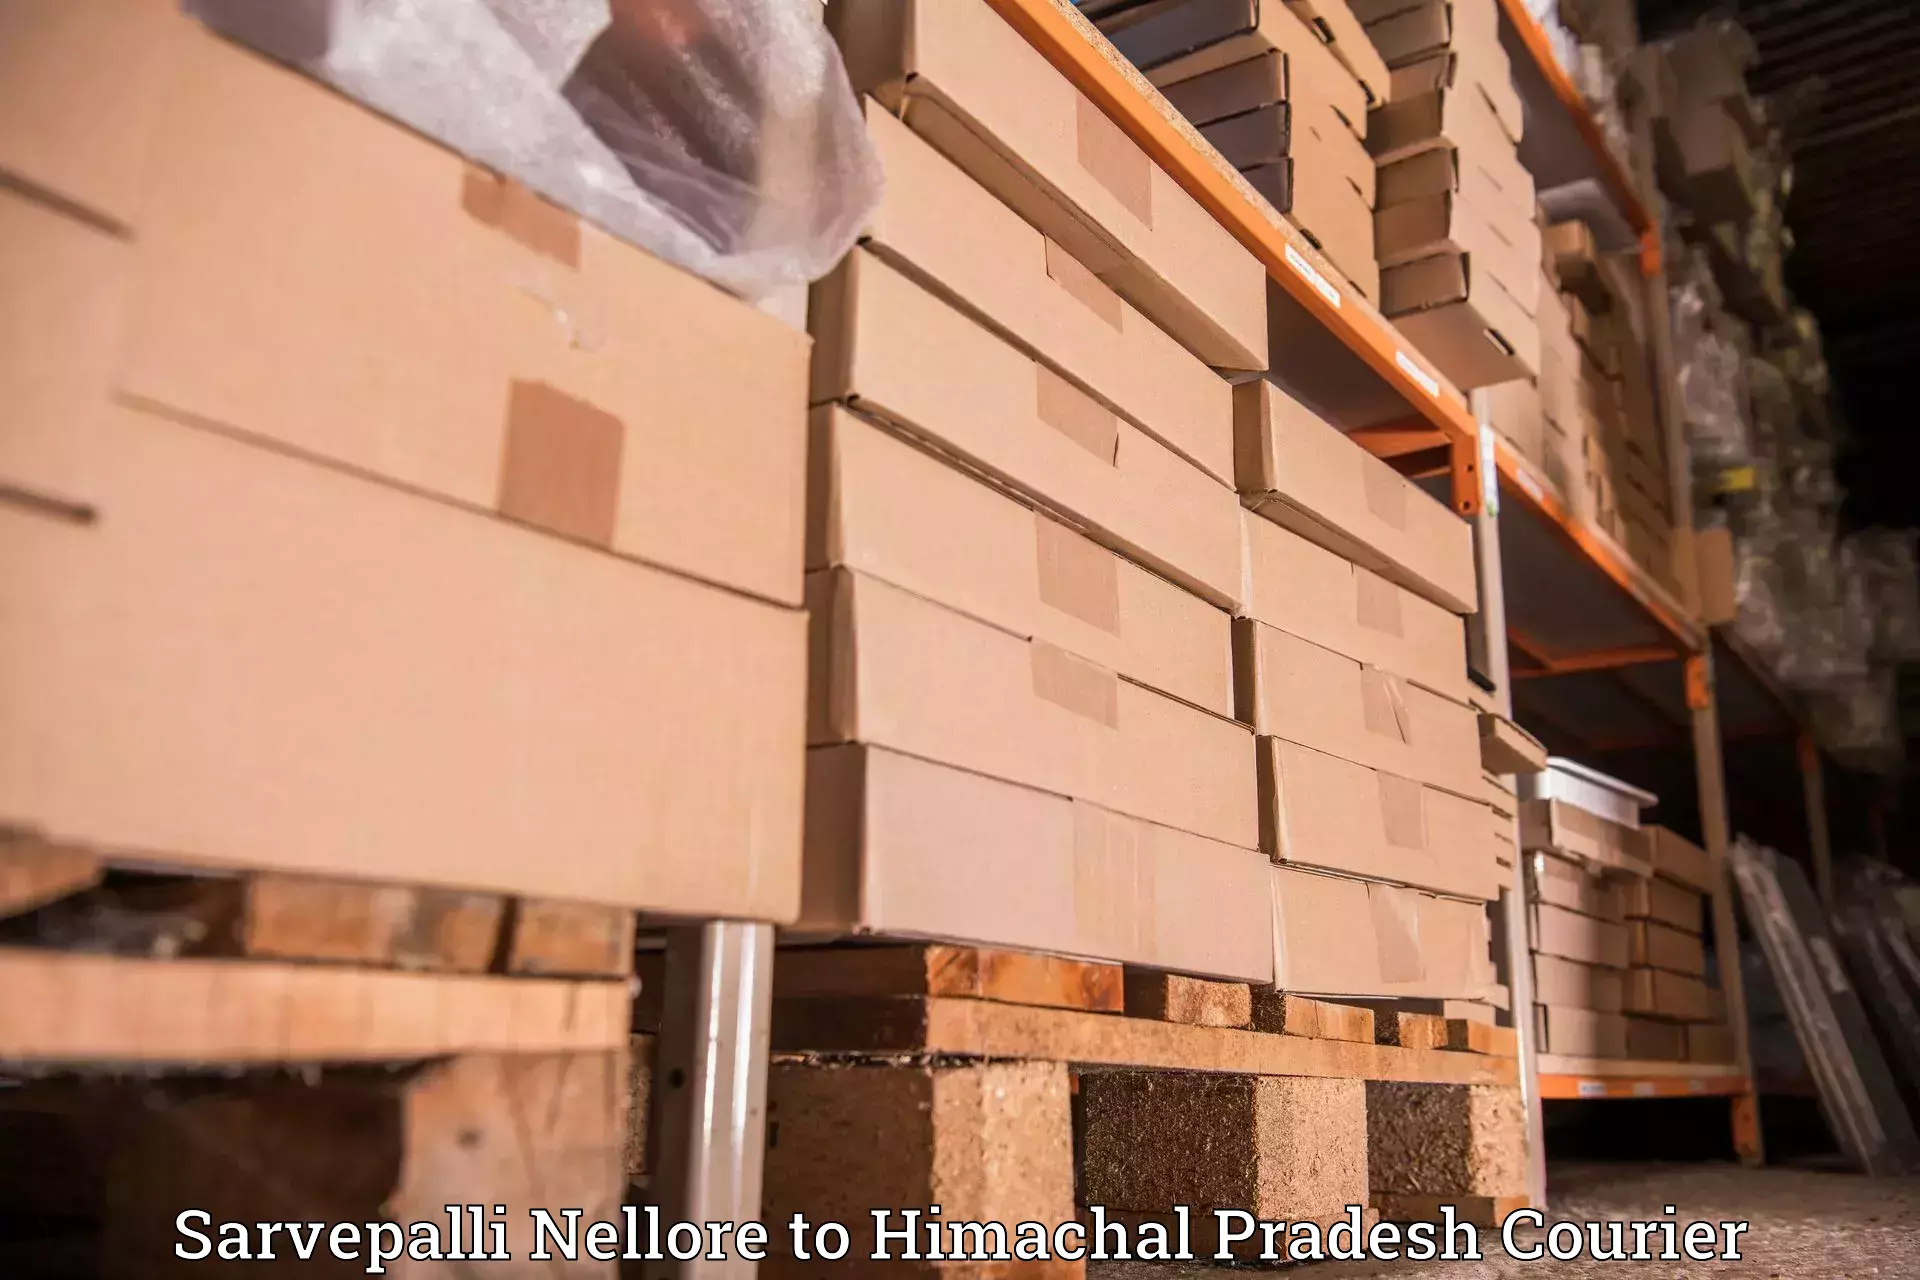 Advanced package delivery Sarvepalli Nellore to Kunihar